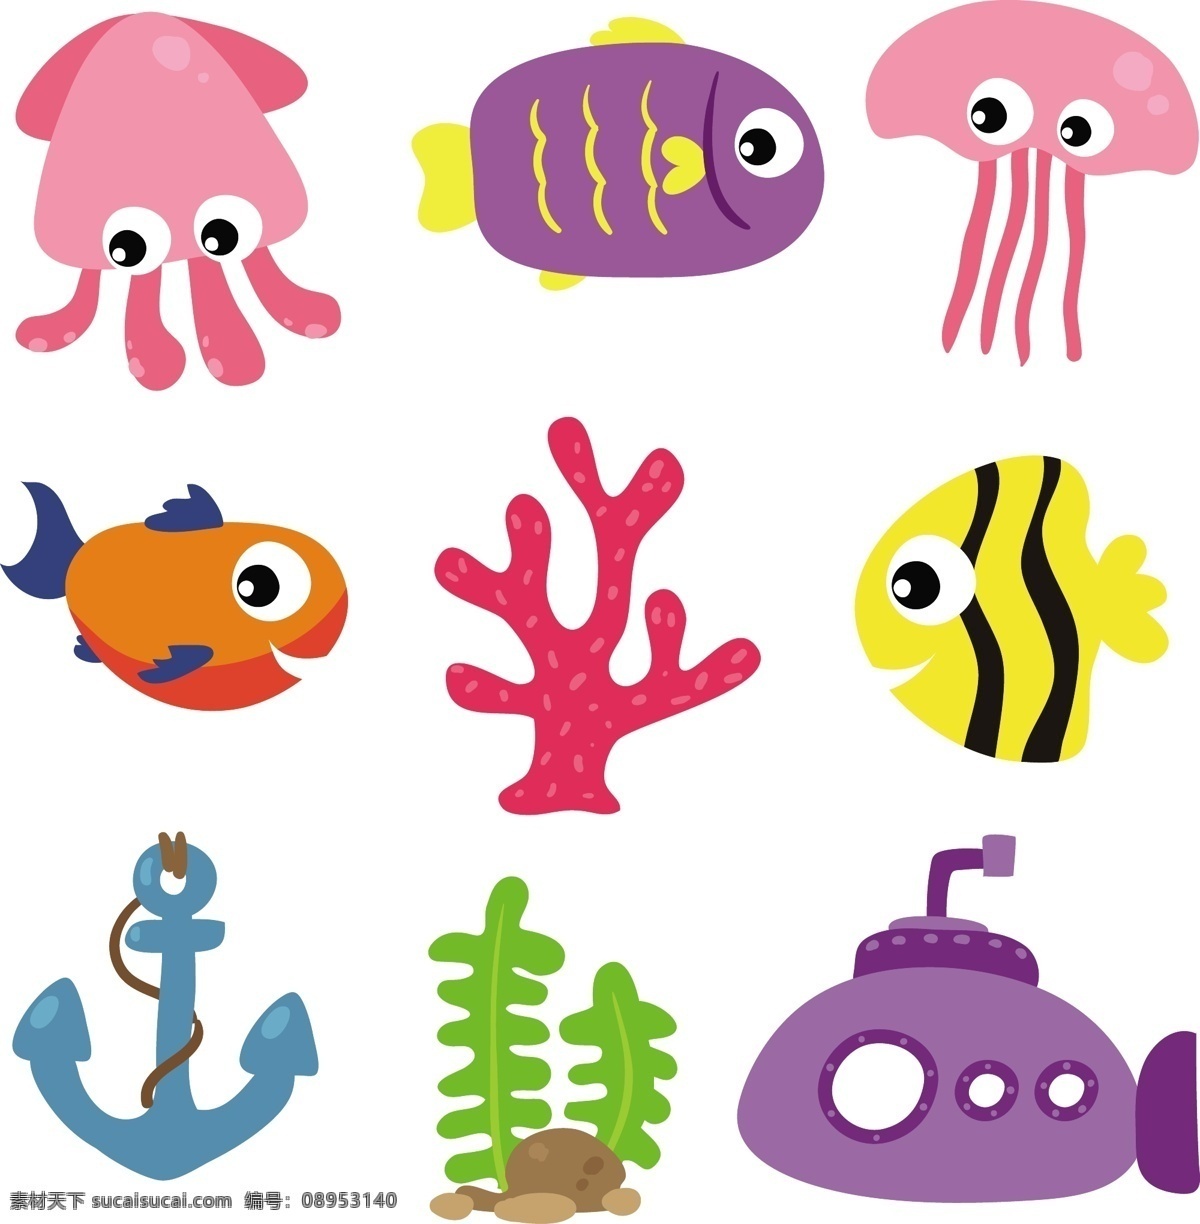 组 彩色 海洋 创意 可爱 卡通 卡哇伊 矢量素材 动物 小动物 创意设计 简约 元素 生物元素 动物元素